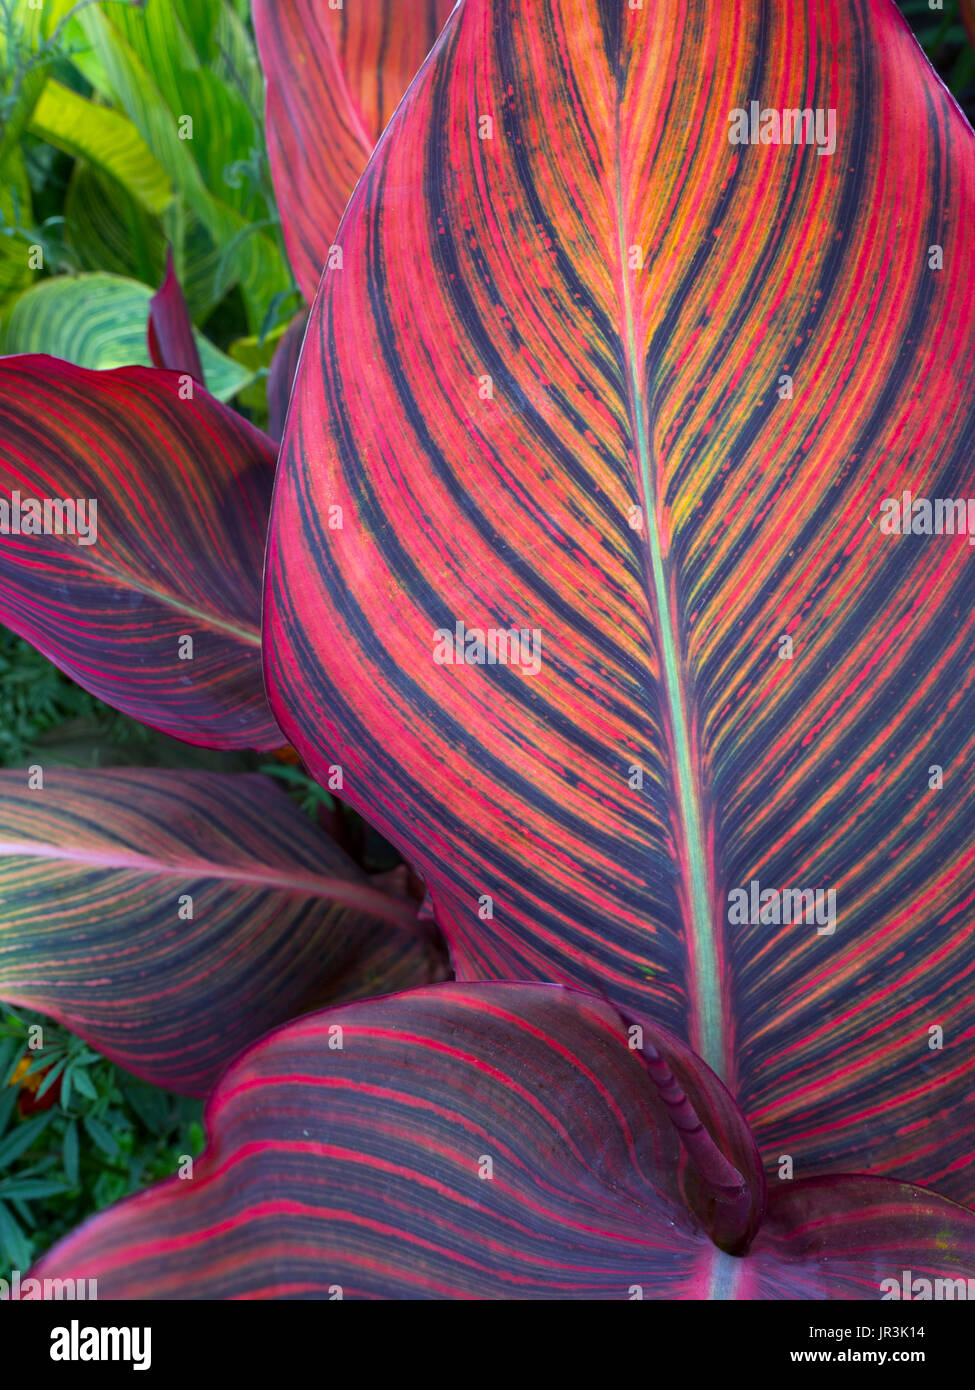 Canna lily leaf close-up nel bordo del giardino Foto Stock